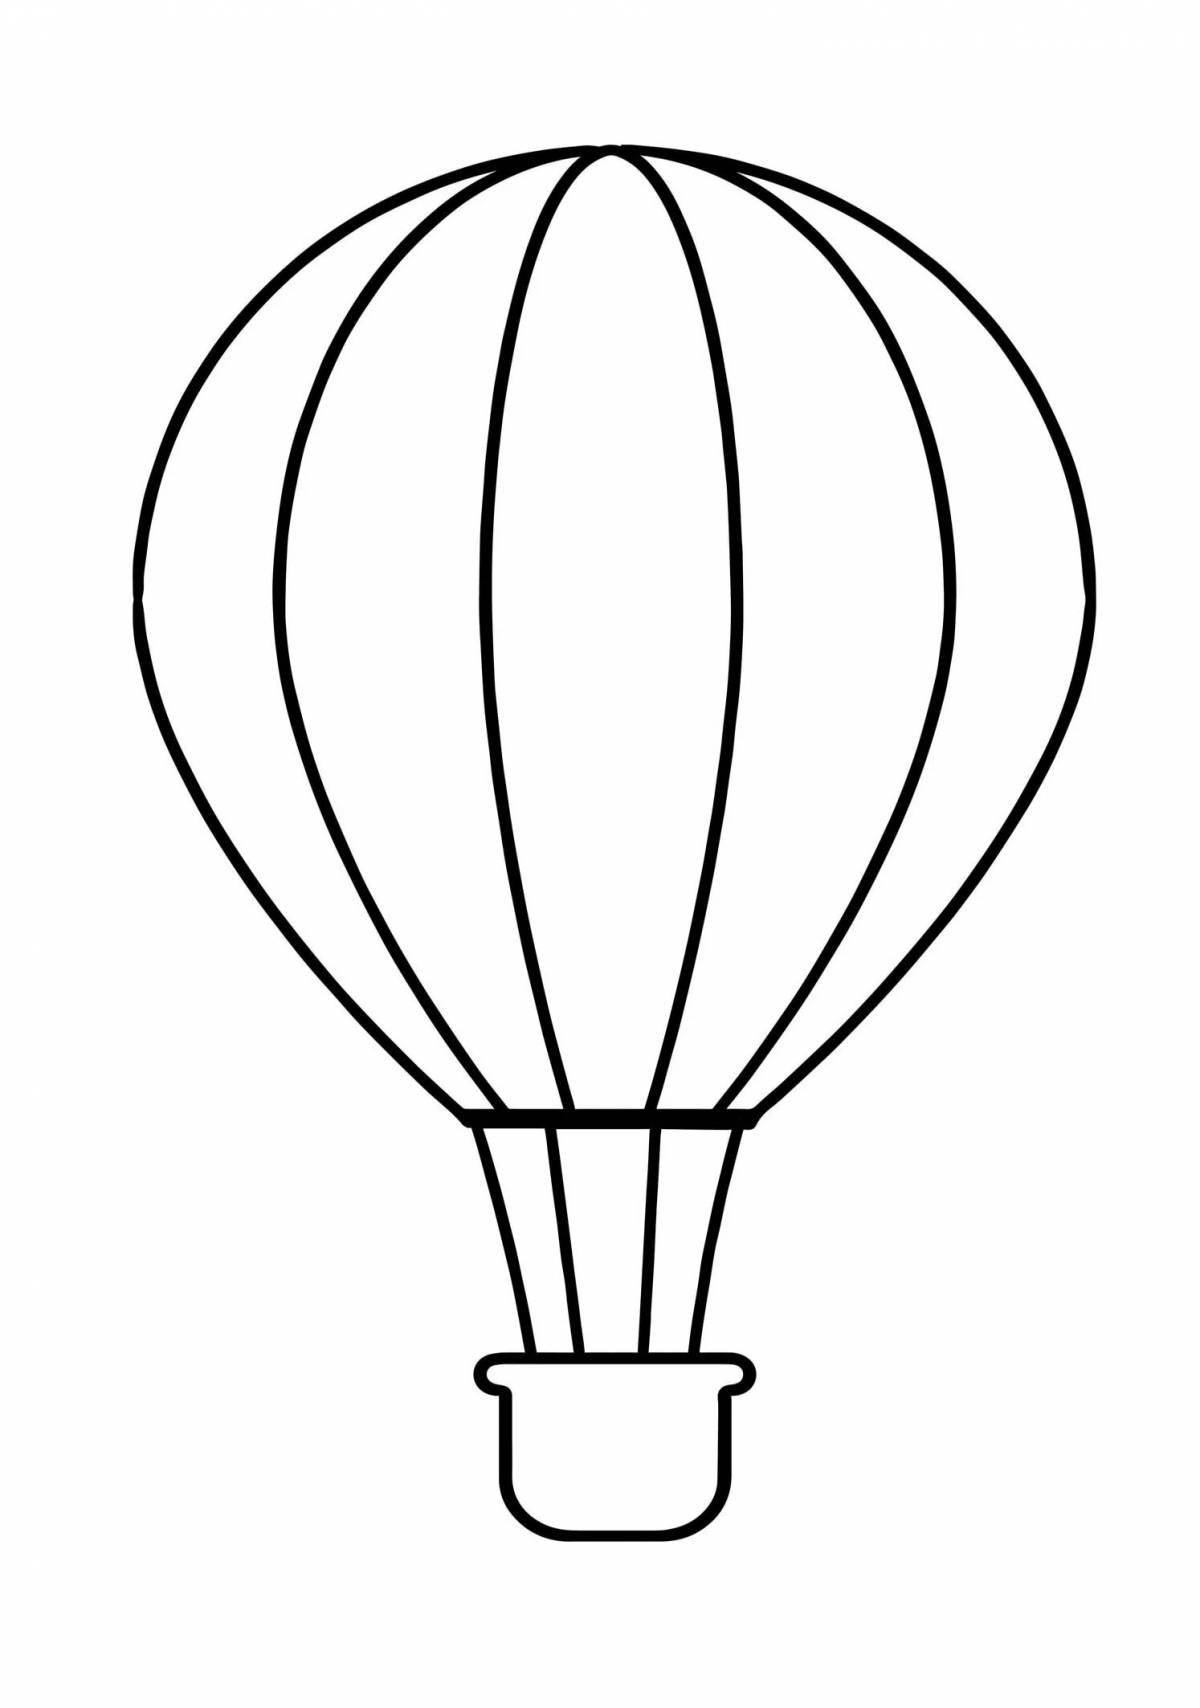 Игривый рисунок воздушного шара